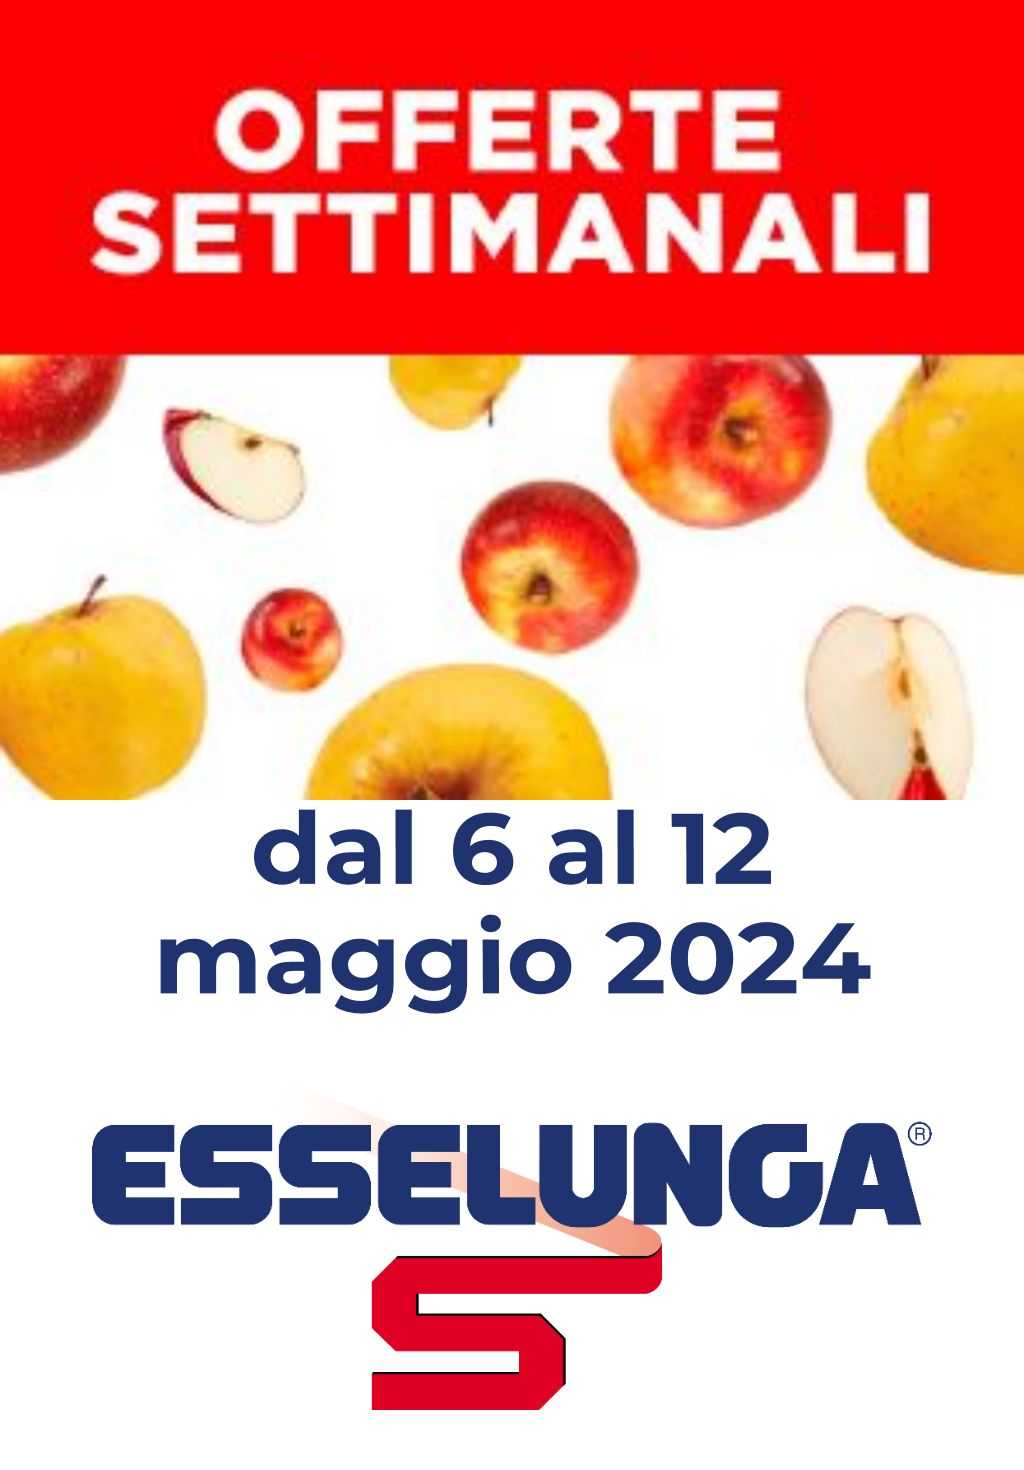 Volantino Esselunga offerte settimanali dal 6 al 12 maggio 2024